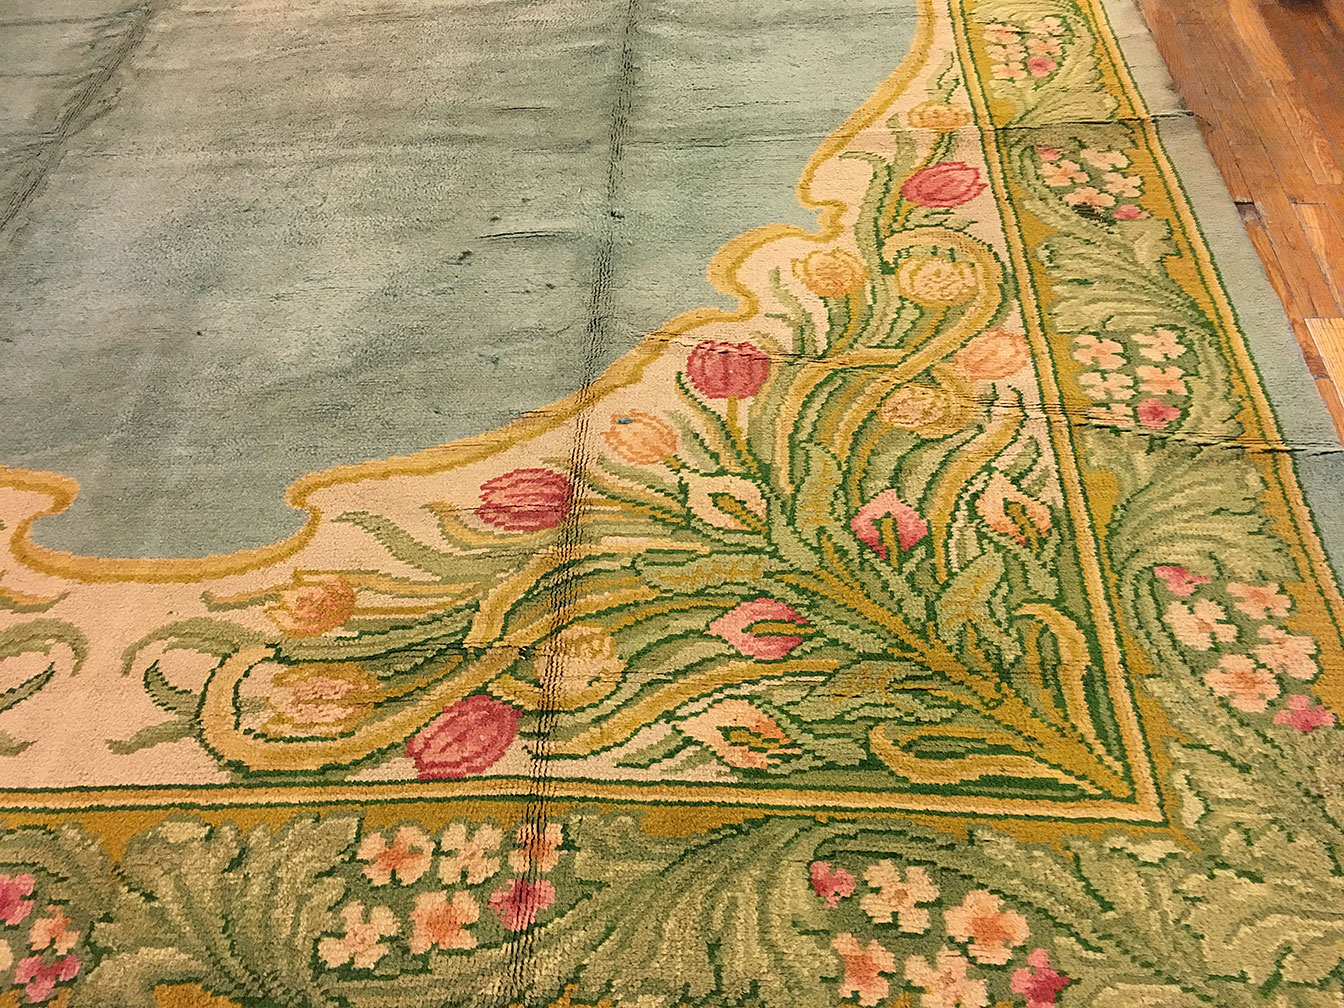 Antique donegal Carpet - # 52941